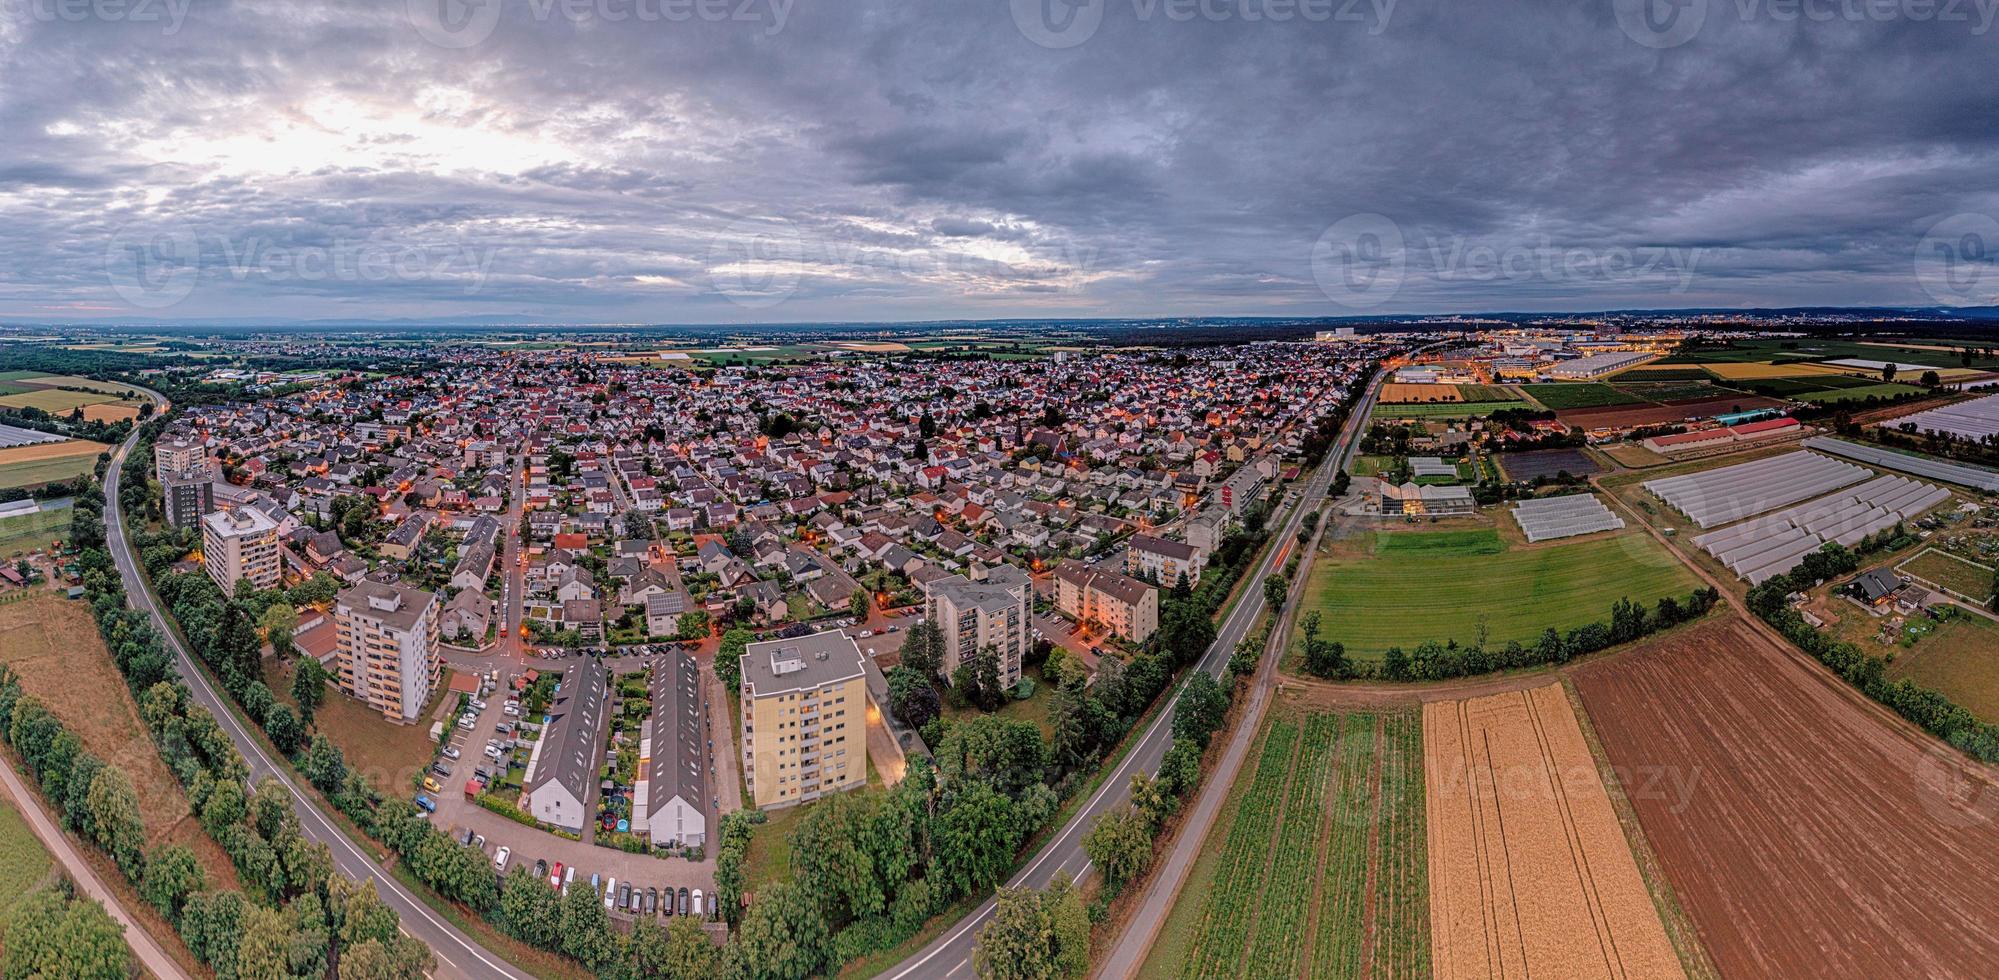 Drönare panorama över tysk kommun weiterstadt i sydlig hesse under solnedgång foto